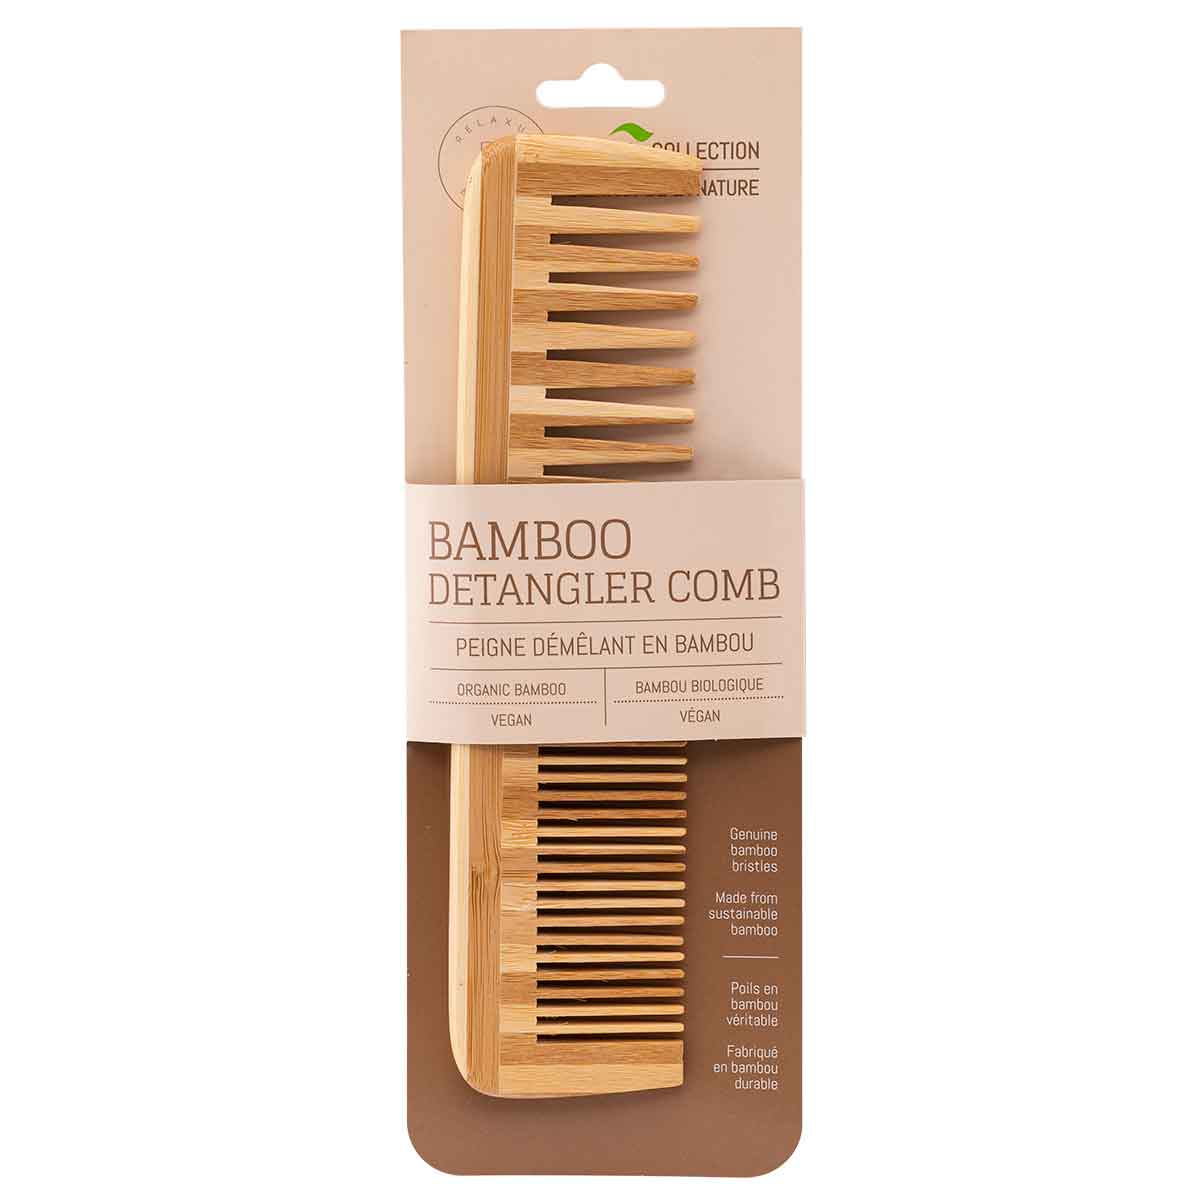 Bamboo Detangler Comb